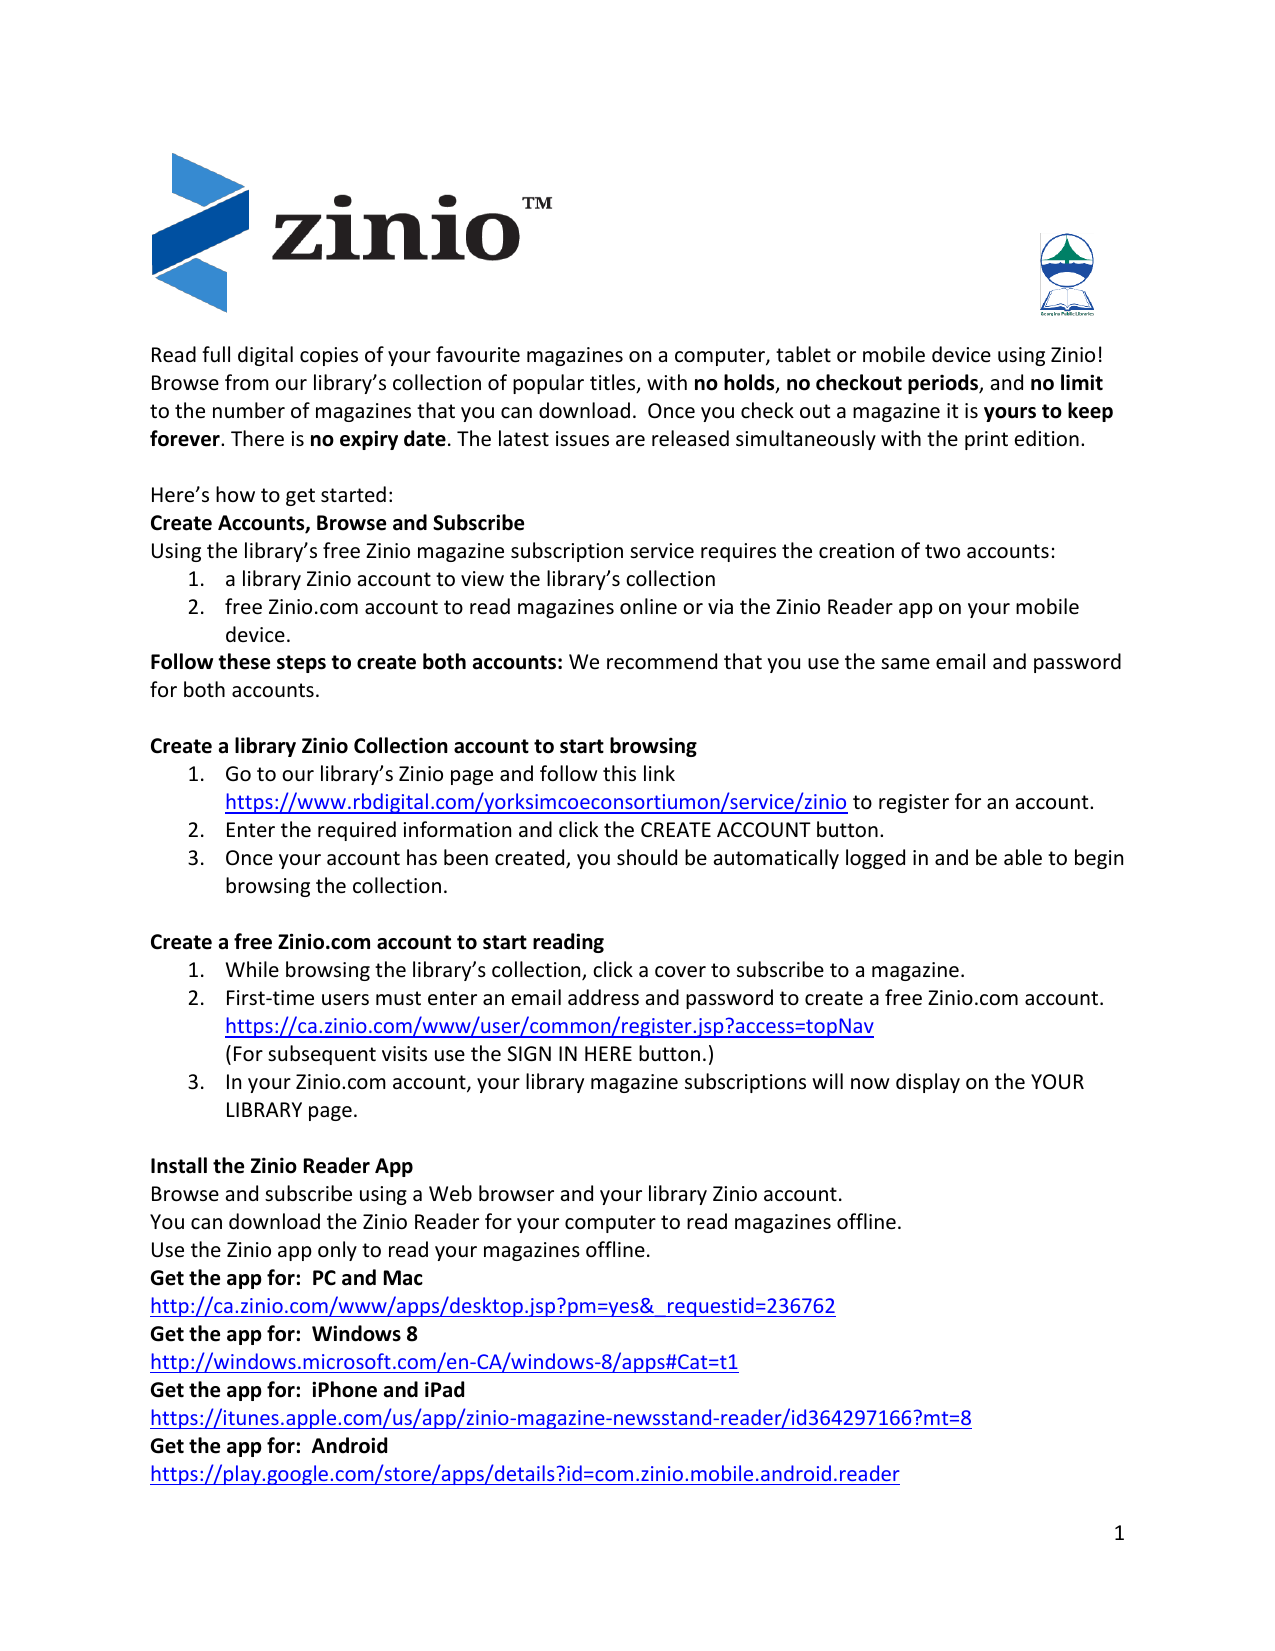 zinio reader 4 for mac